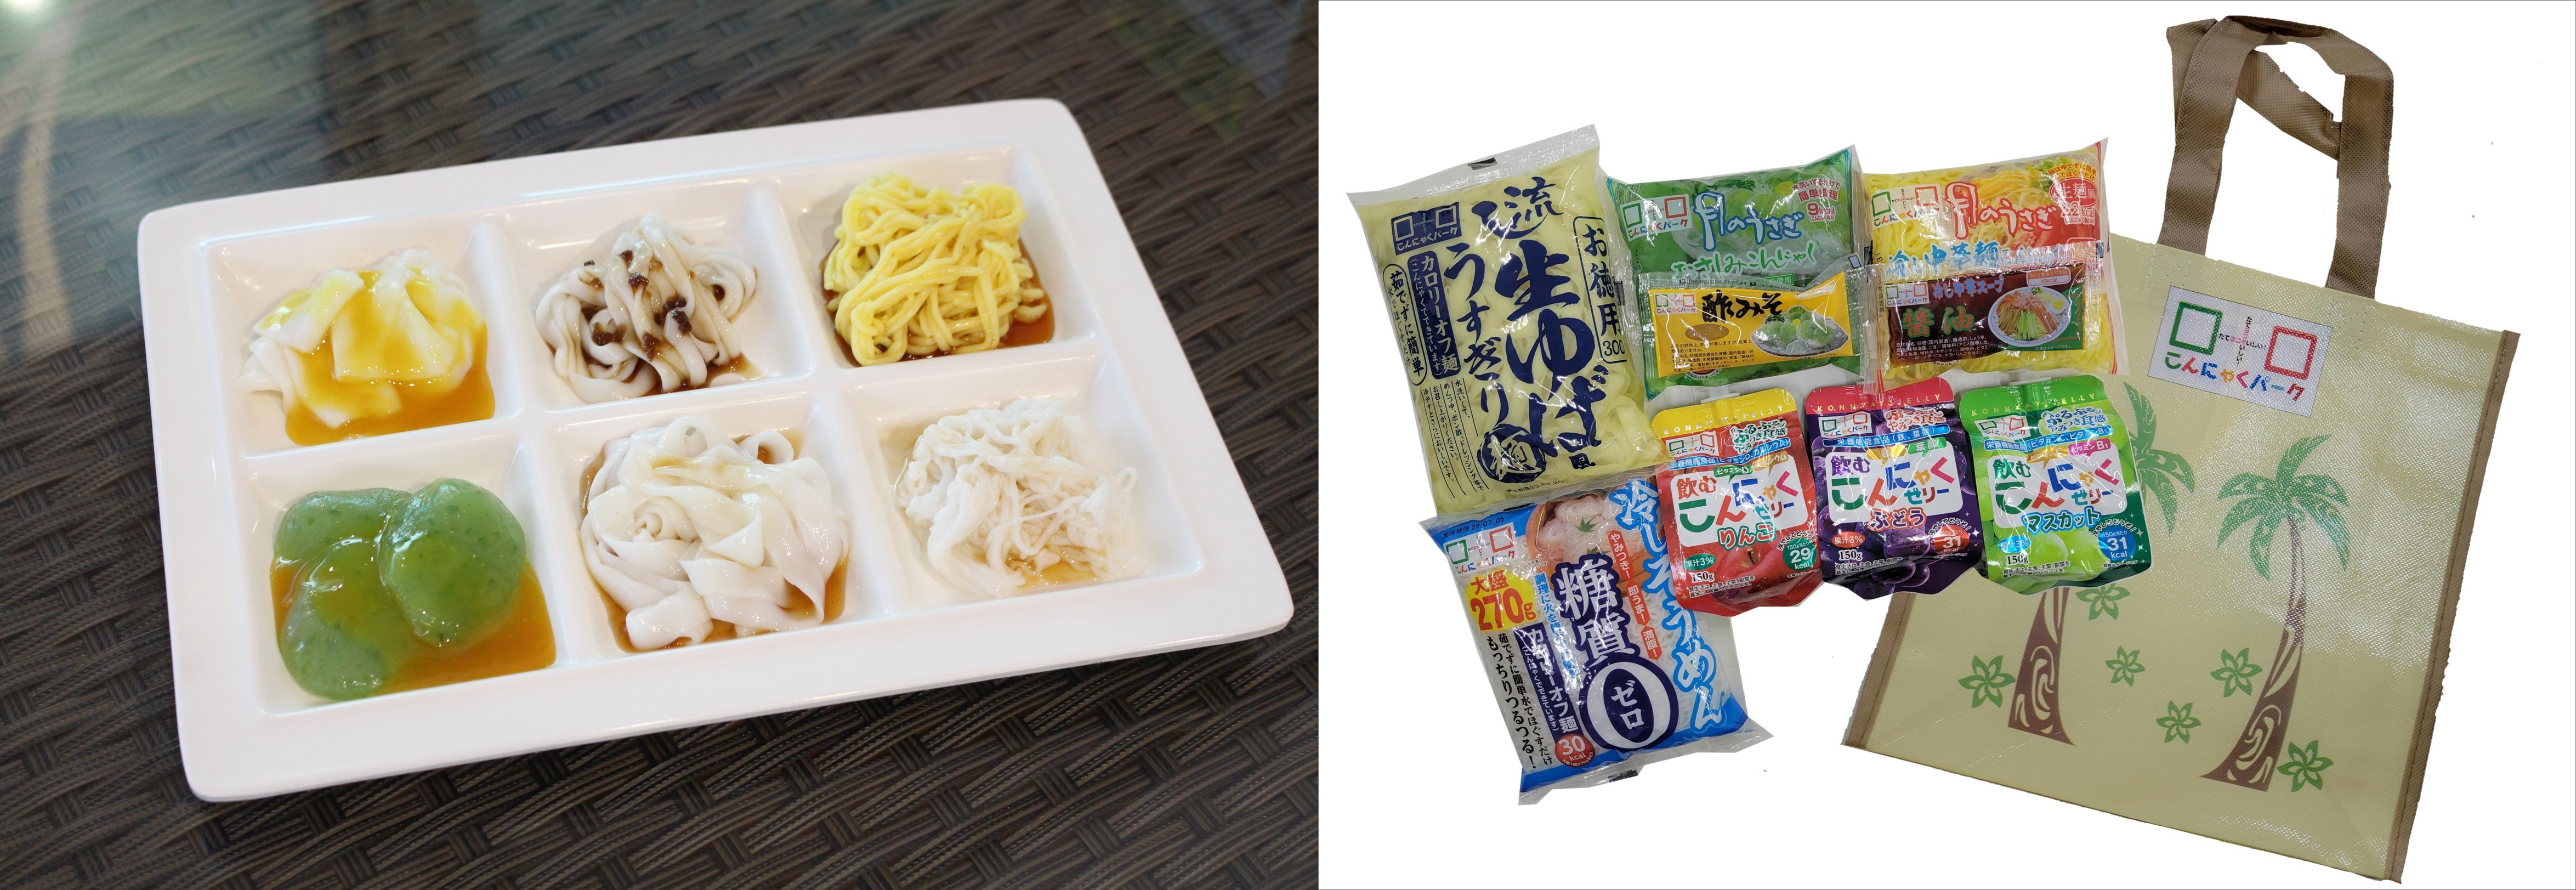 新潟県発！みかんと同じ糖度の“じゃが芋”が
応援購入サービスMakuakeにて5月8日(月)より先行販売開始